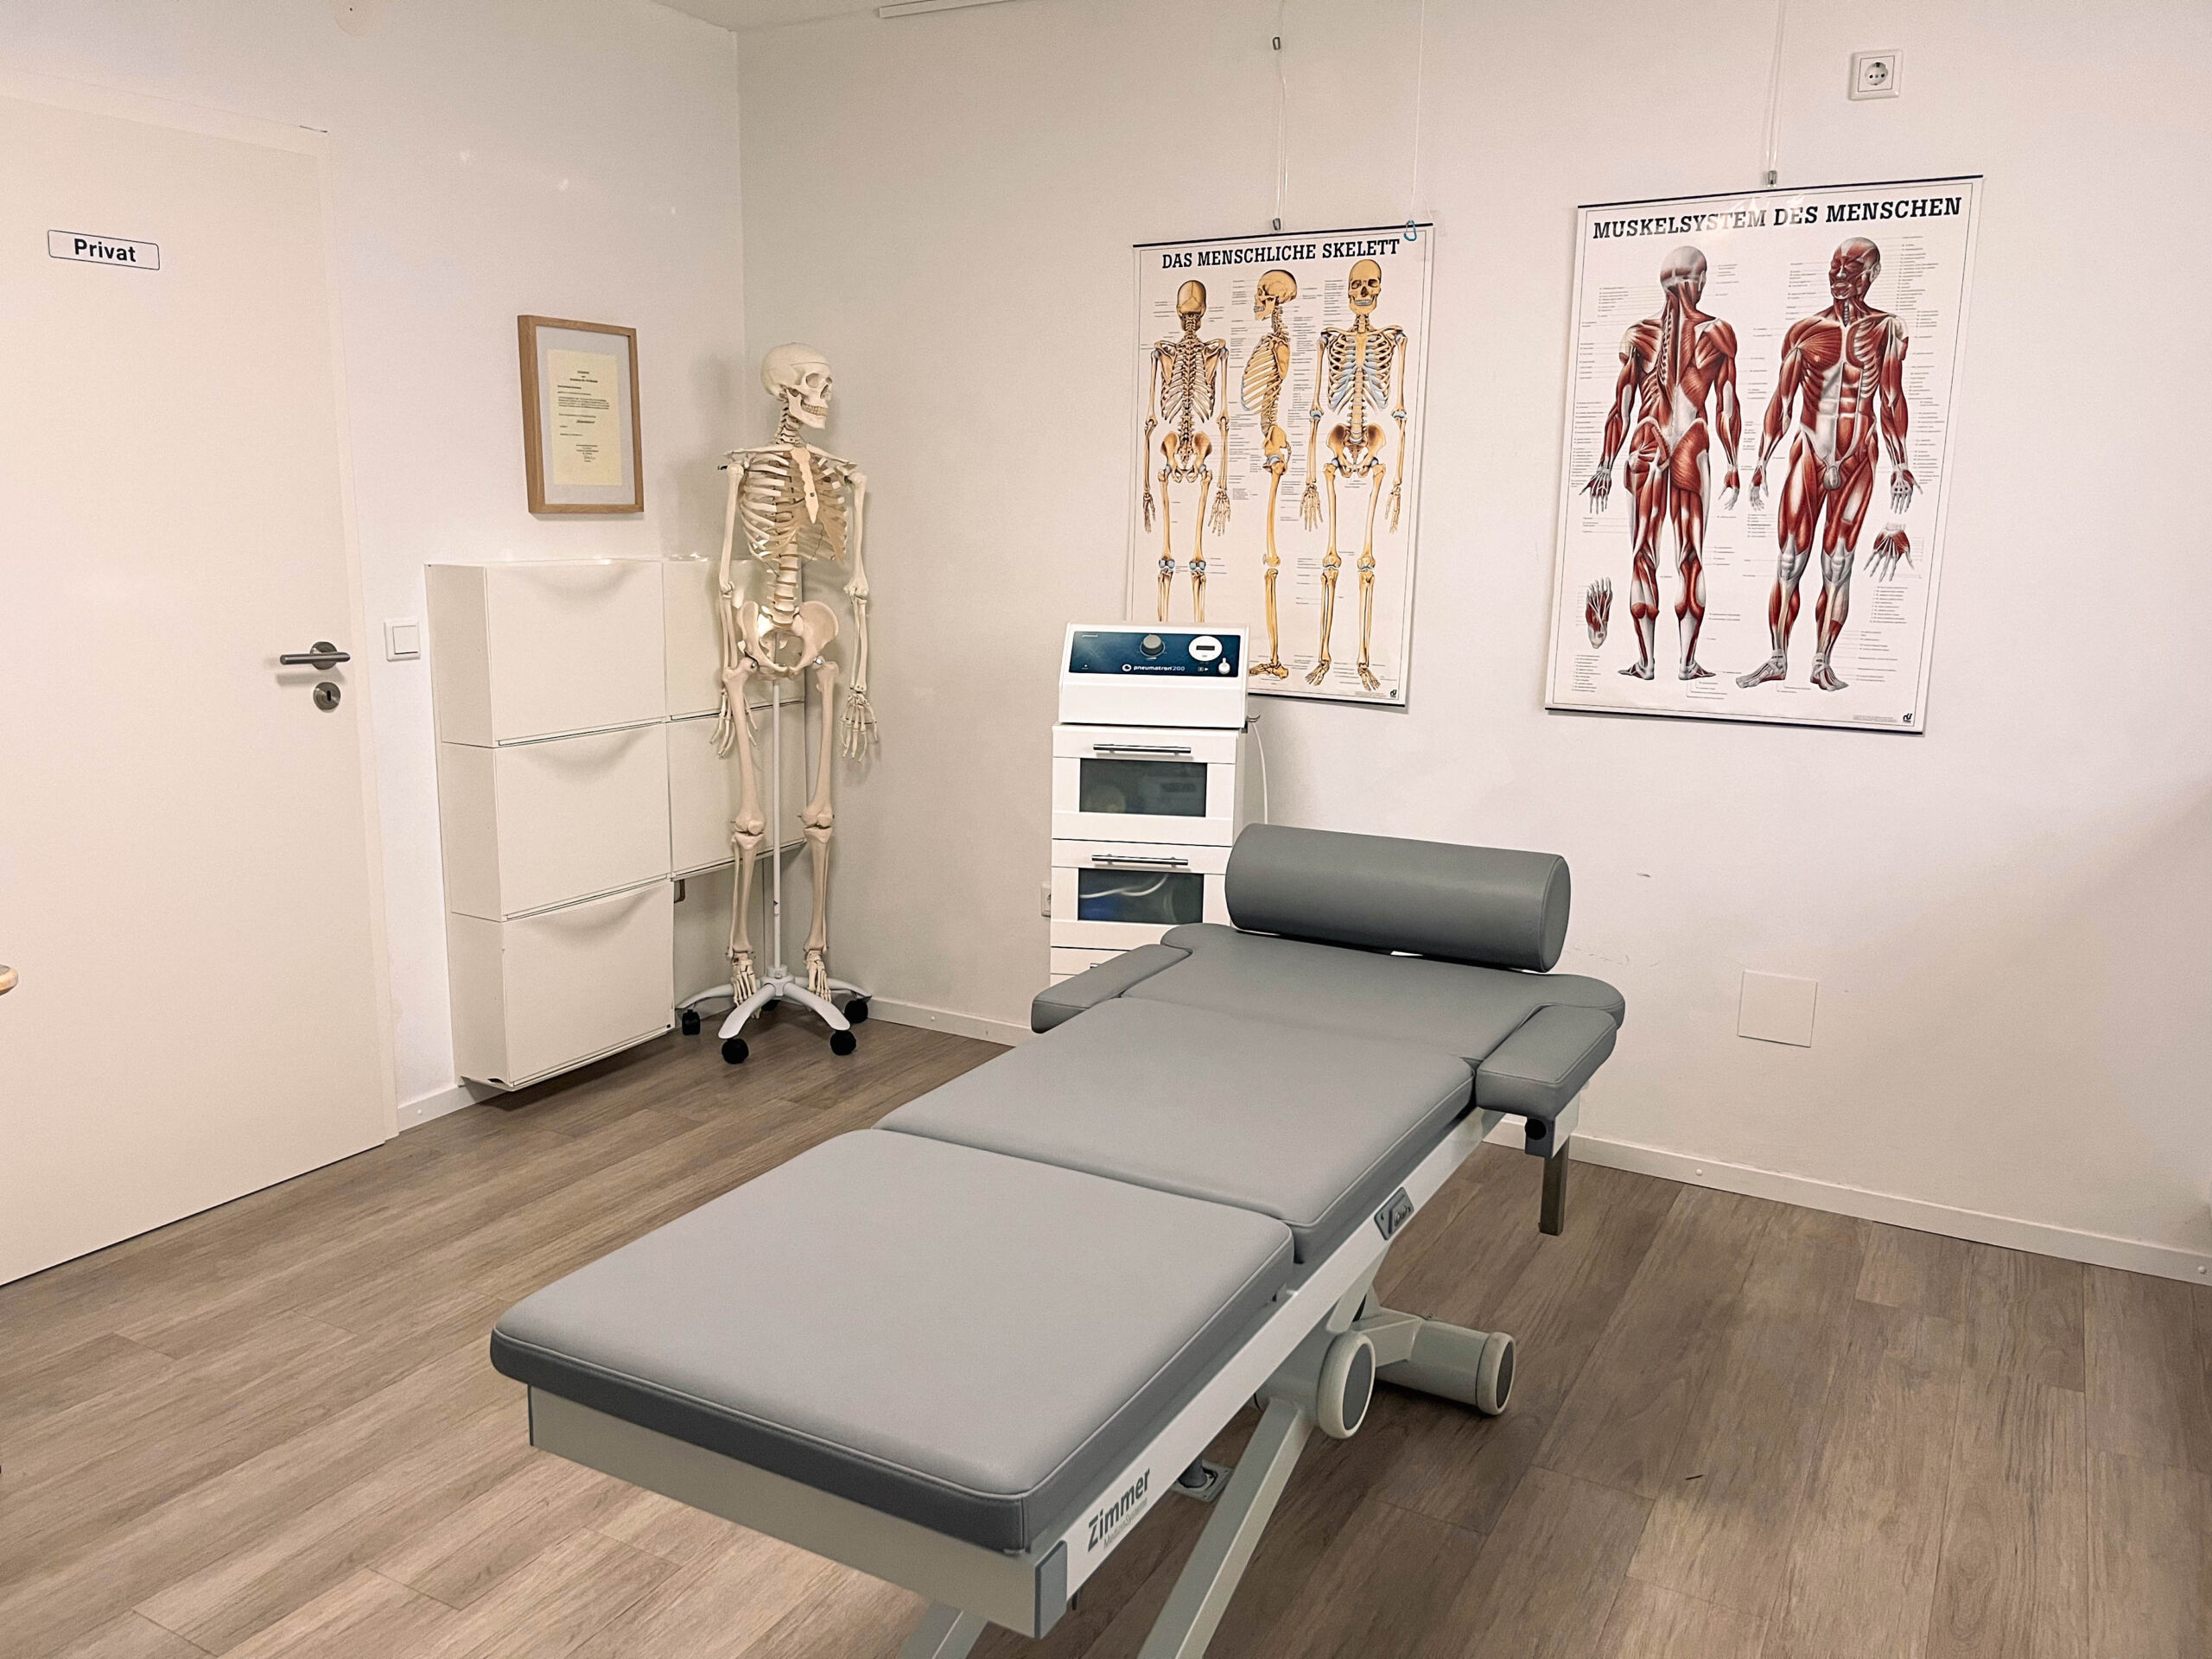 Behandlungszimmer mit Modellen von Muskel- und Knochenaufbau